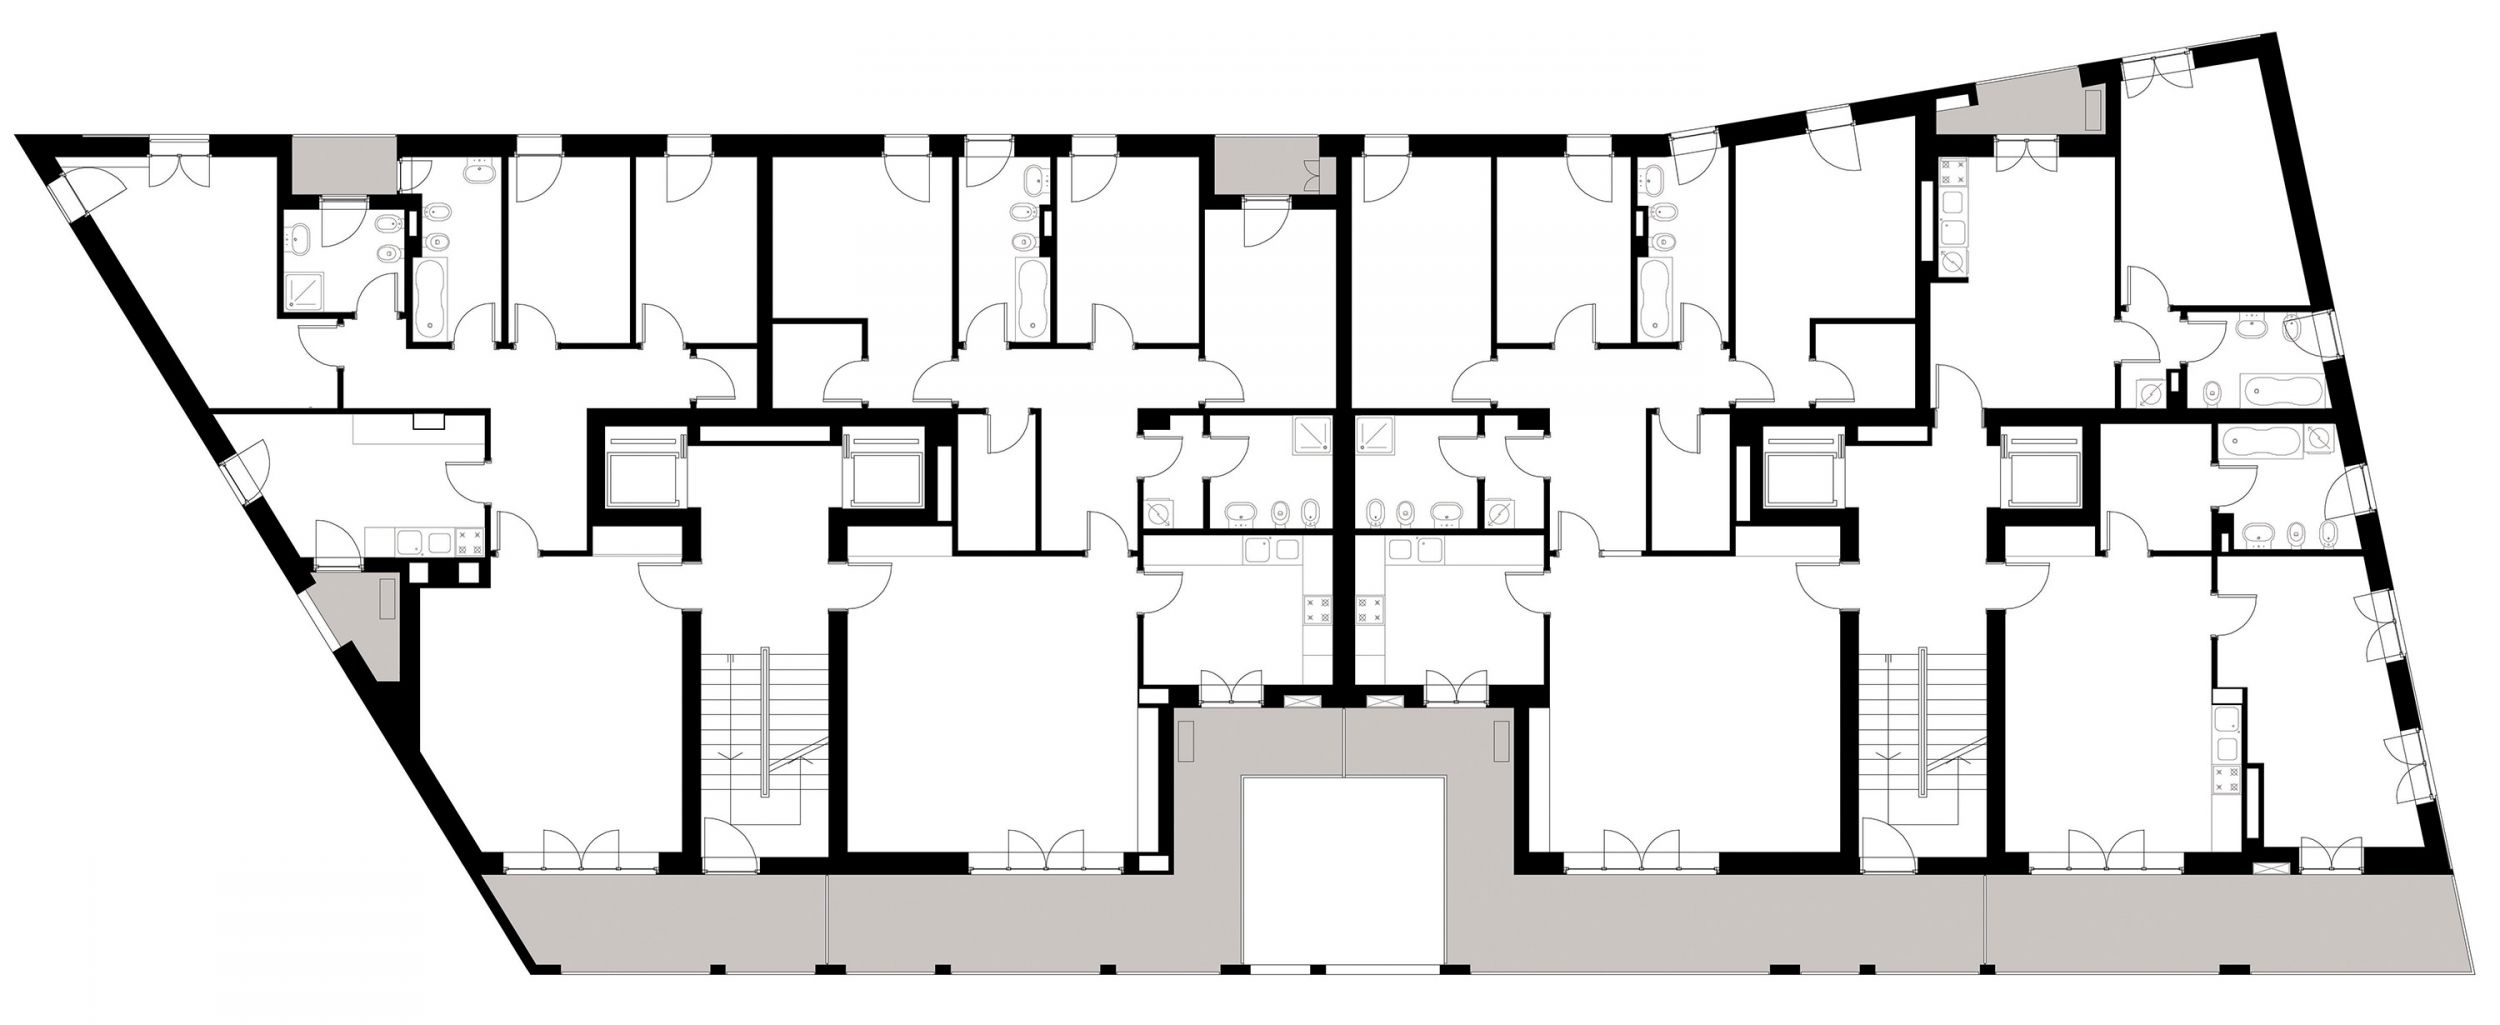 1/7 Typical floor plan